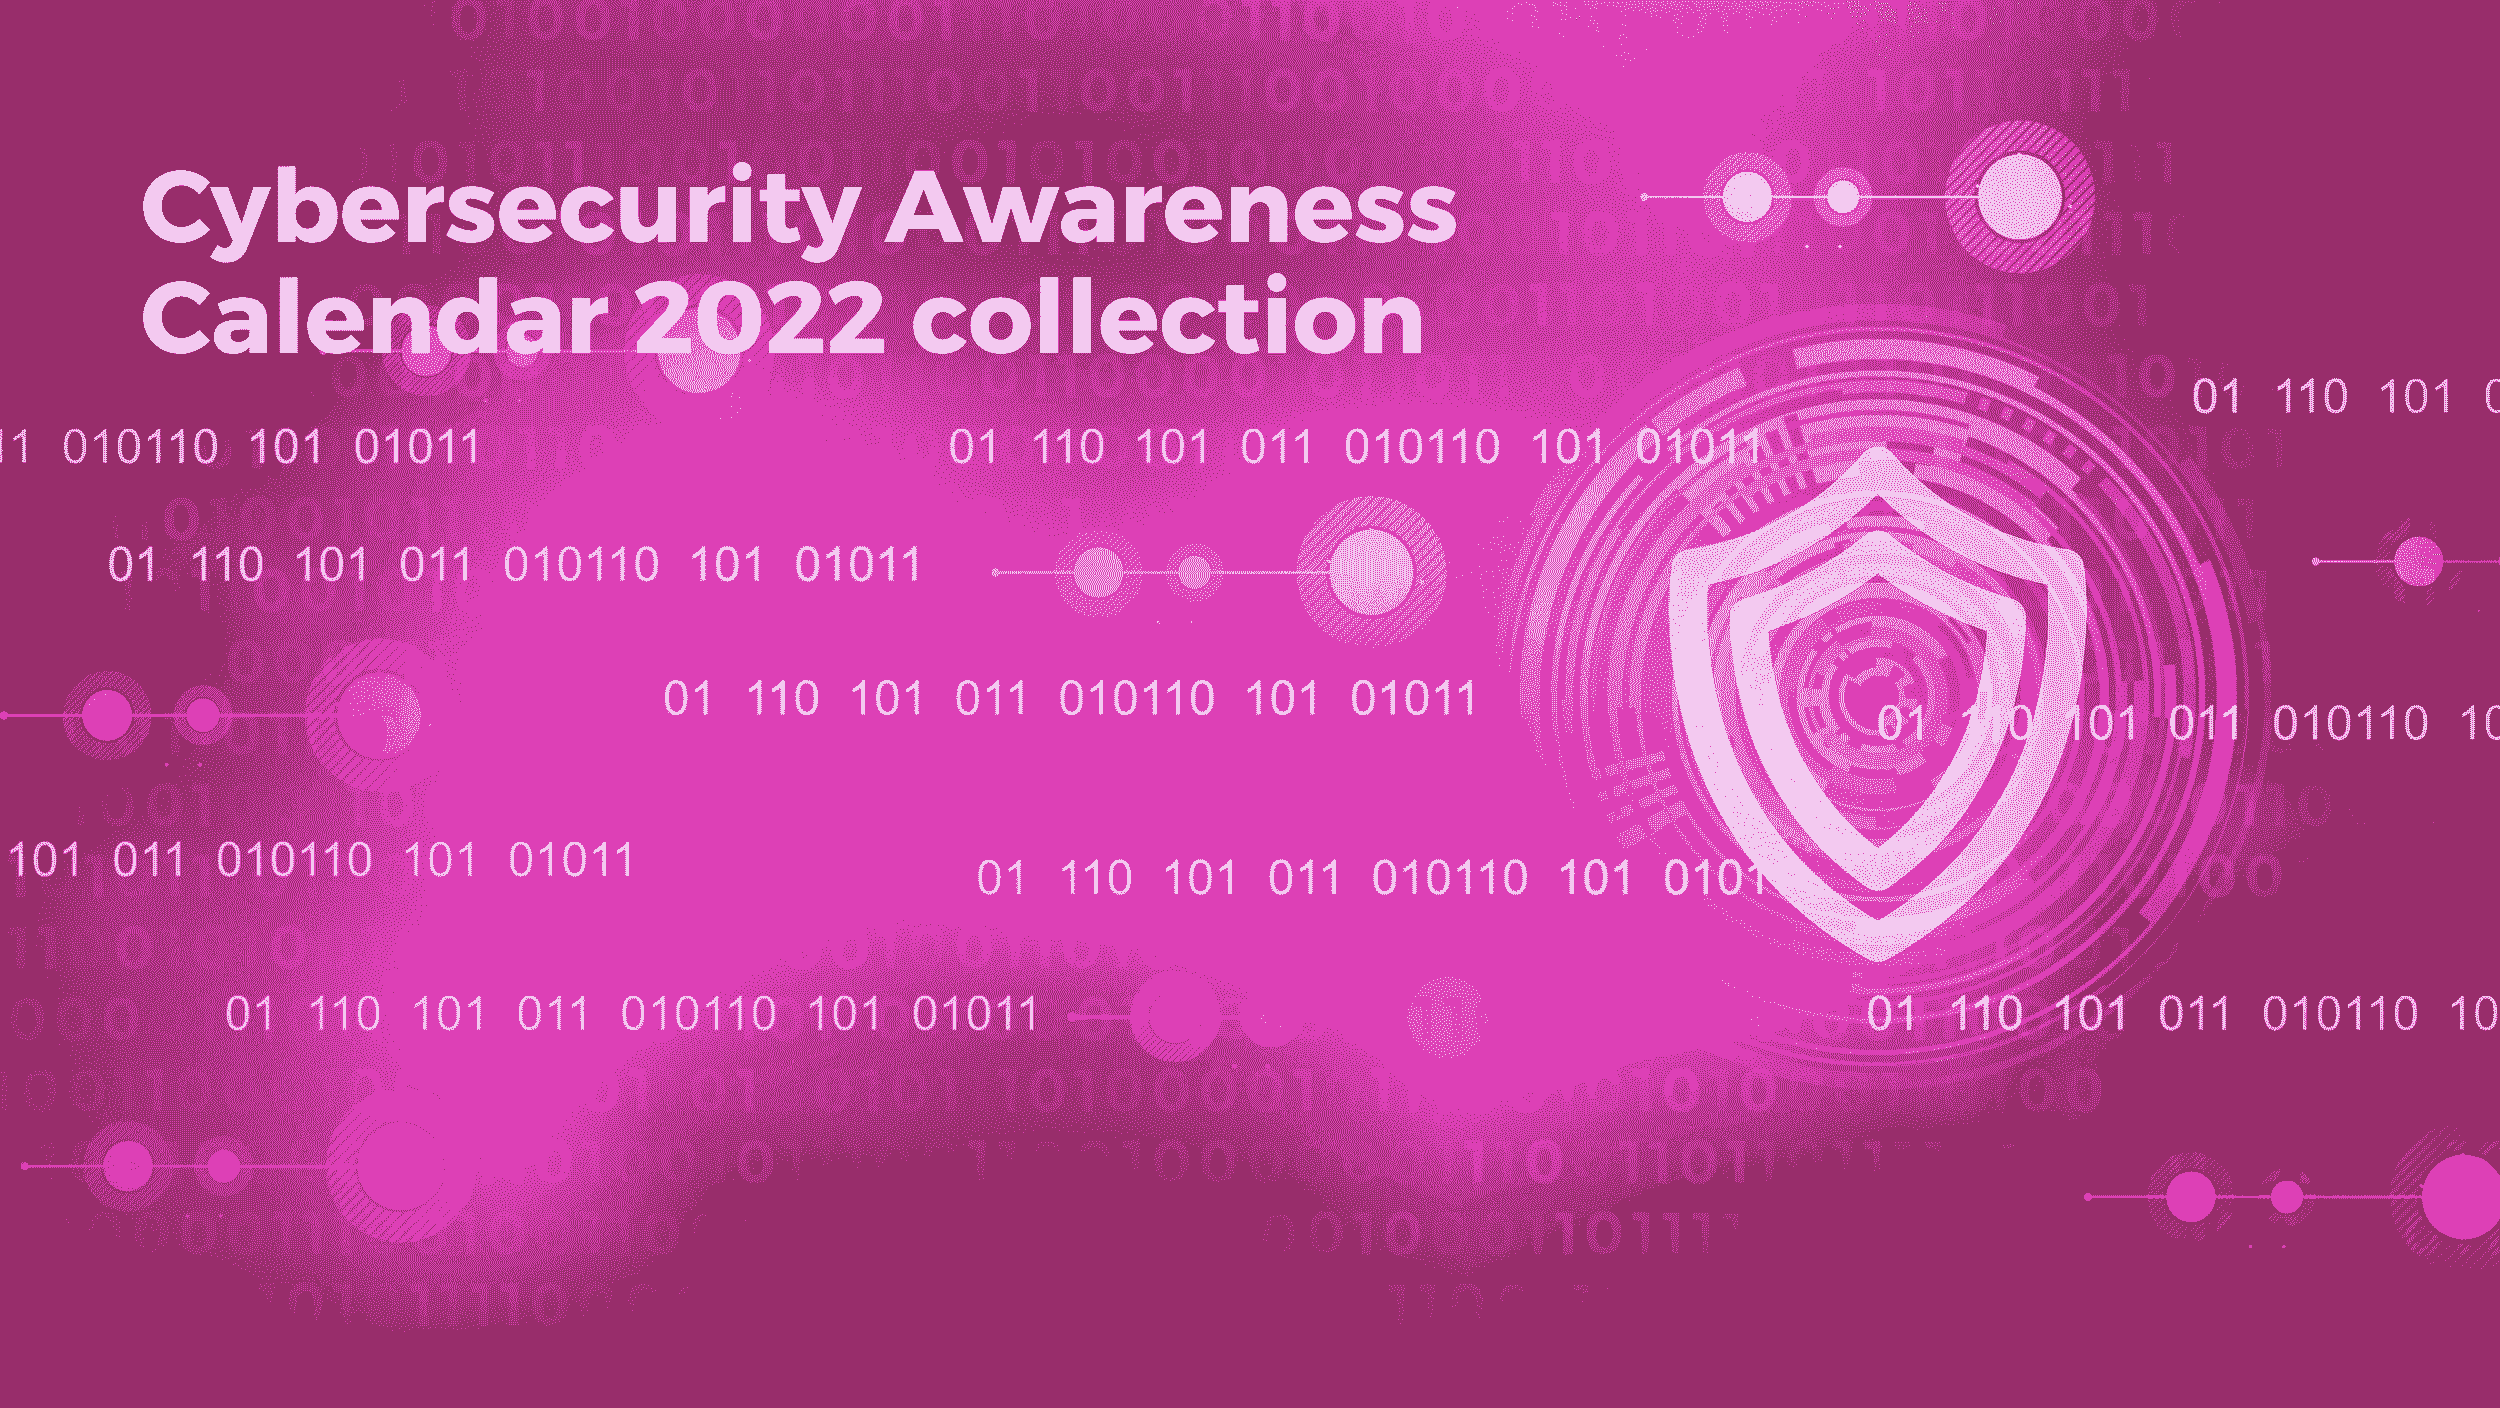 Awareness calendar collection 2022